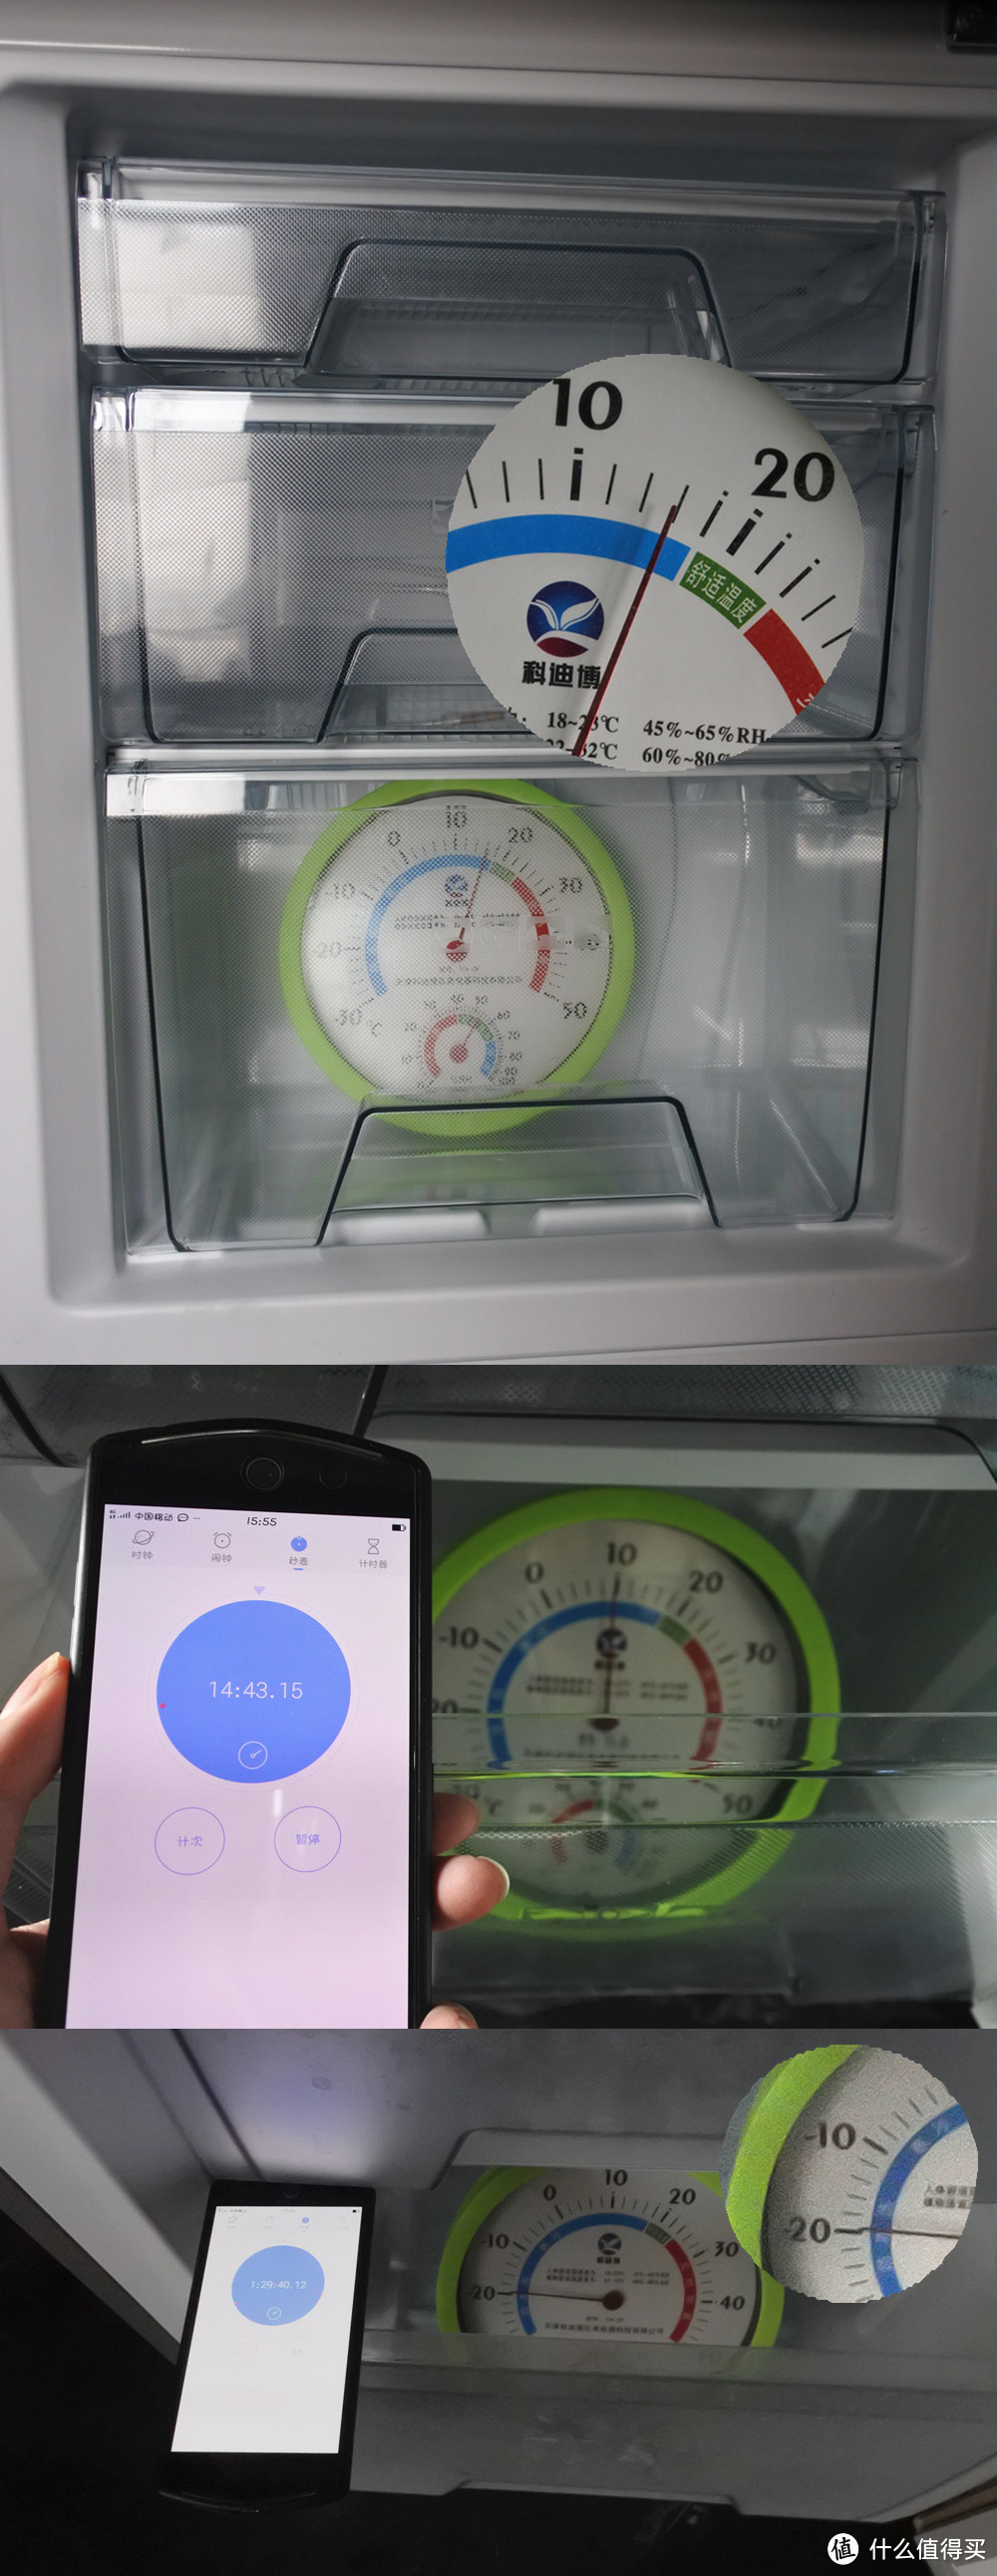 这里做了个制冷实验，新冰箱插上电要多久才能达到-18℃呢？今天的室温是16℃左右，我们将温度测量仪放进冰箱，快15分钟时打开冰箱看一看制冷已经开始起作用了，温度变成10℃，半个小时和一个小时时我都有观察，最后在1小时30分钟时温度算是达到并有点超过了-18℃的设定，因为不是精密温度测量仪，可能有点小误差，但是一个半小时的制冷效果我还是挺满意的，包括看看冷藏室，也是已经有点冰霜感了，冷藏室有霜无需担心哦，以前的看冰箱需要一段时间关电清理冷藏室冰块，但是这款冷藏室背后自带出水孔，及时排水，无需人工除霜。